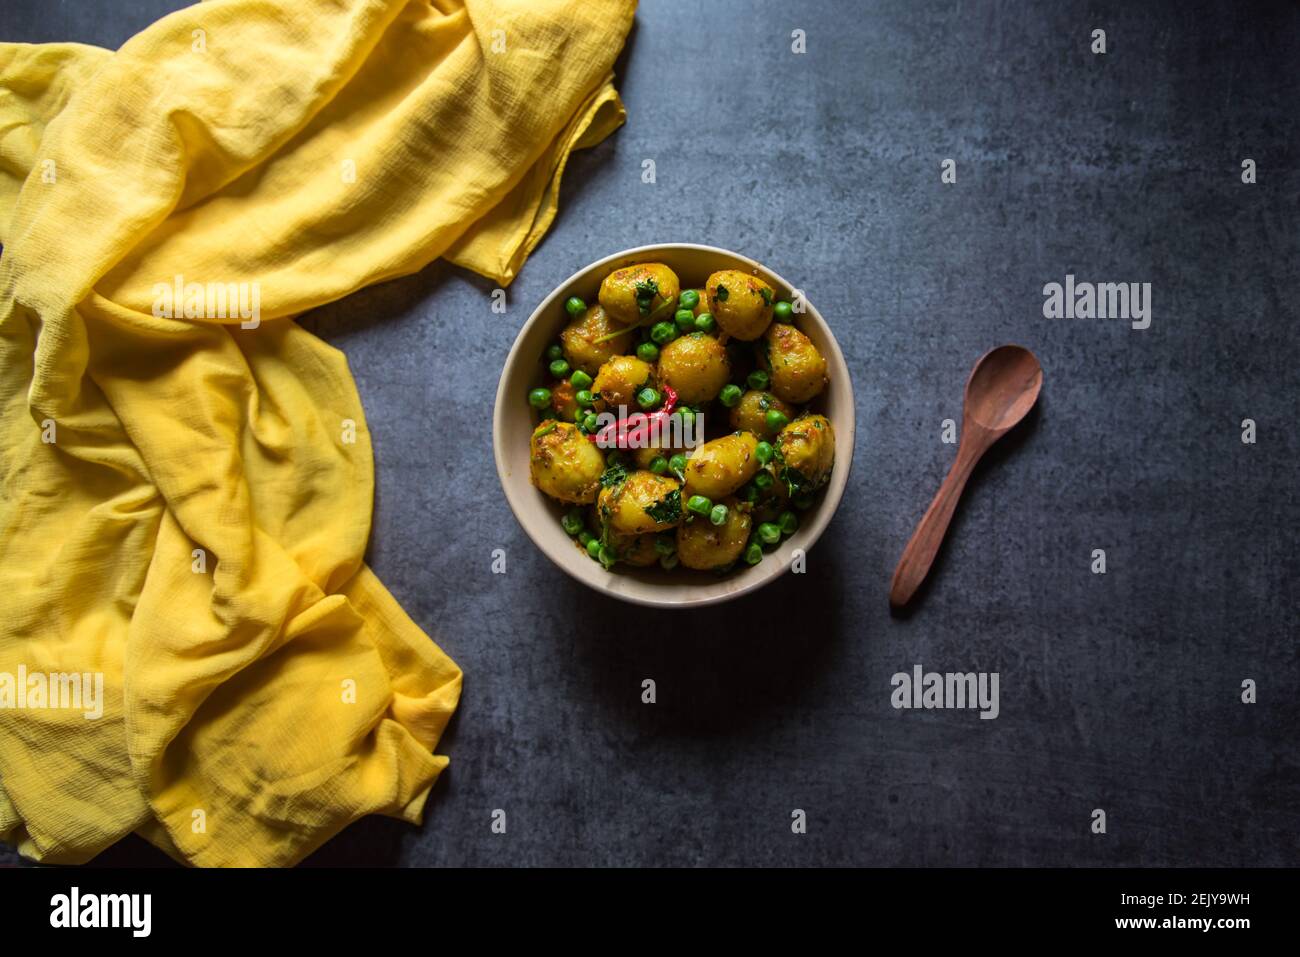 Indisches Lebensmittel Dum aloo oder Kartoffeln in einem langsamen Feuer in einer Schüssel gekocht. Stockfoto